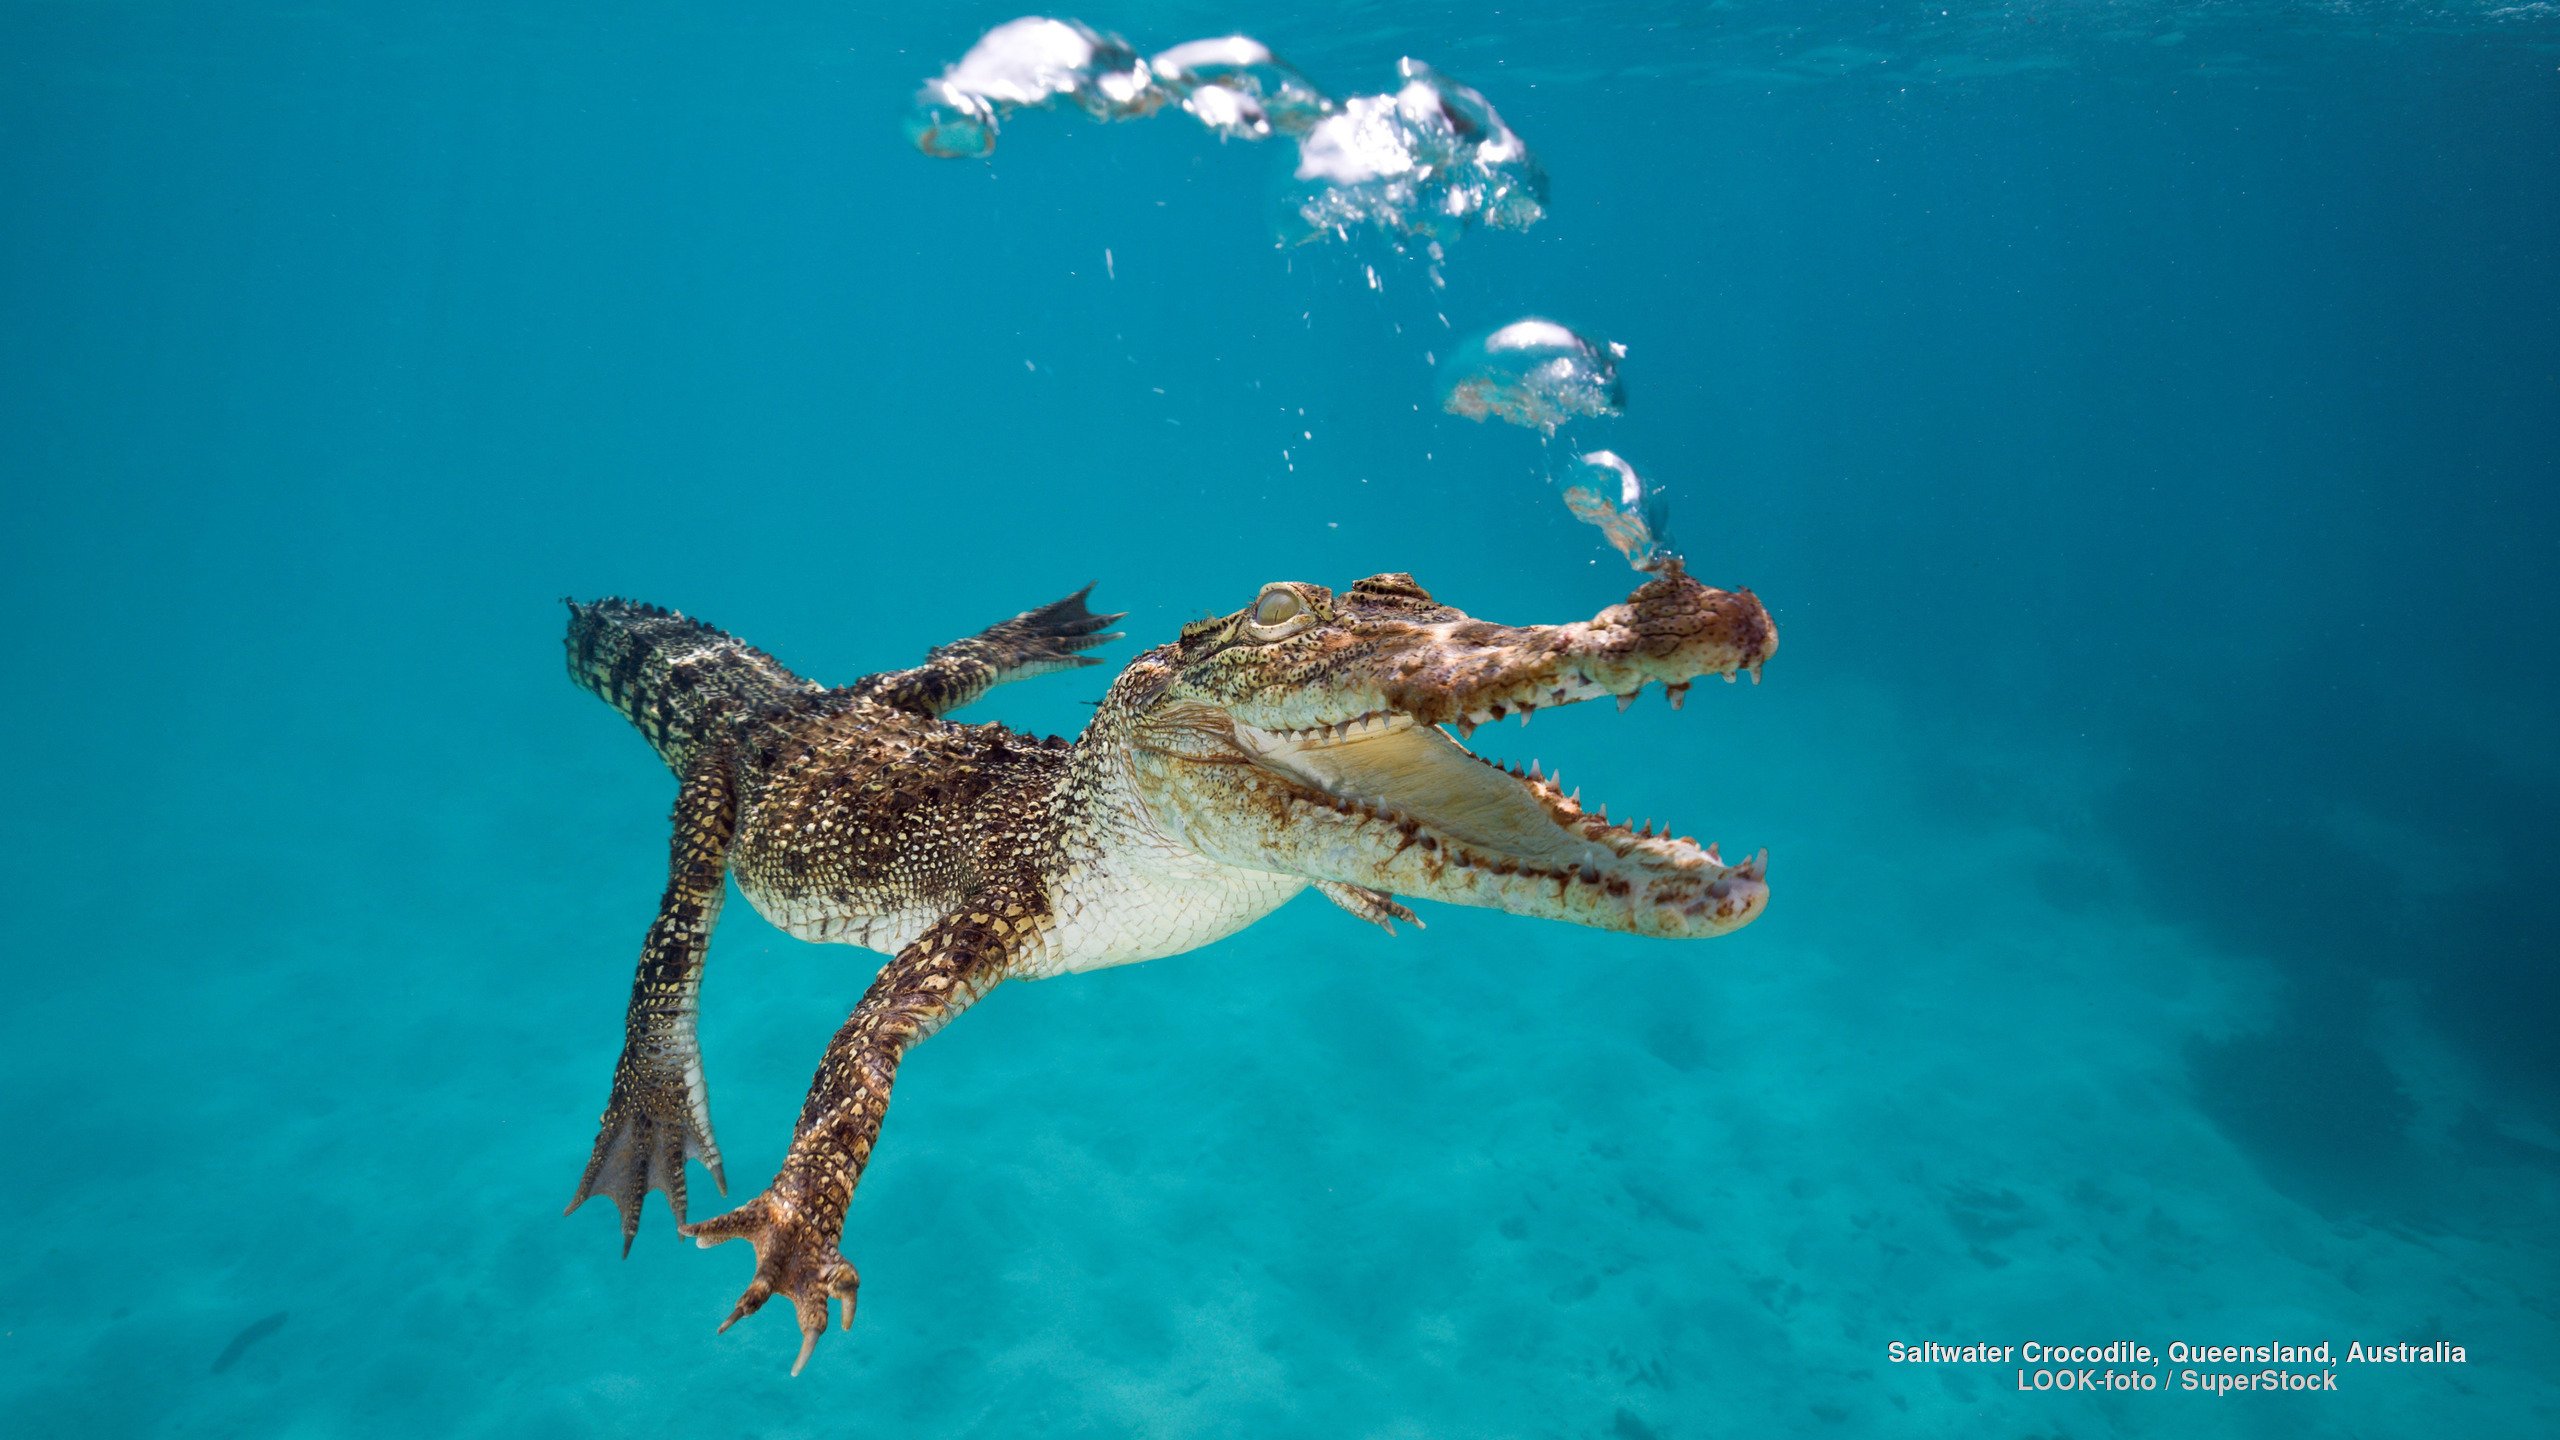 saltwater, Crocodile, Queensland, Australia Wallpaper